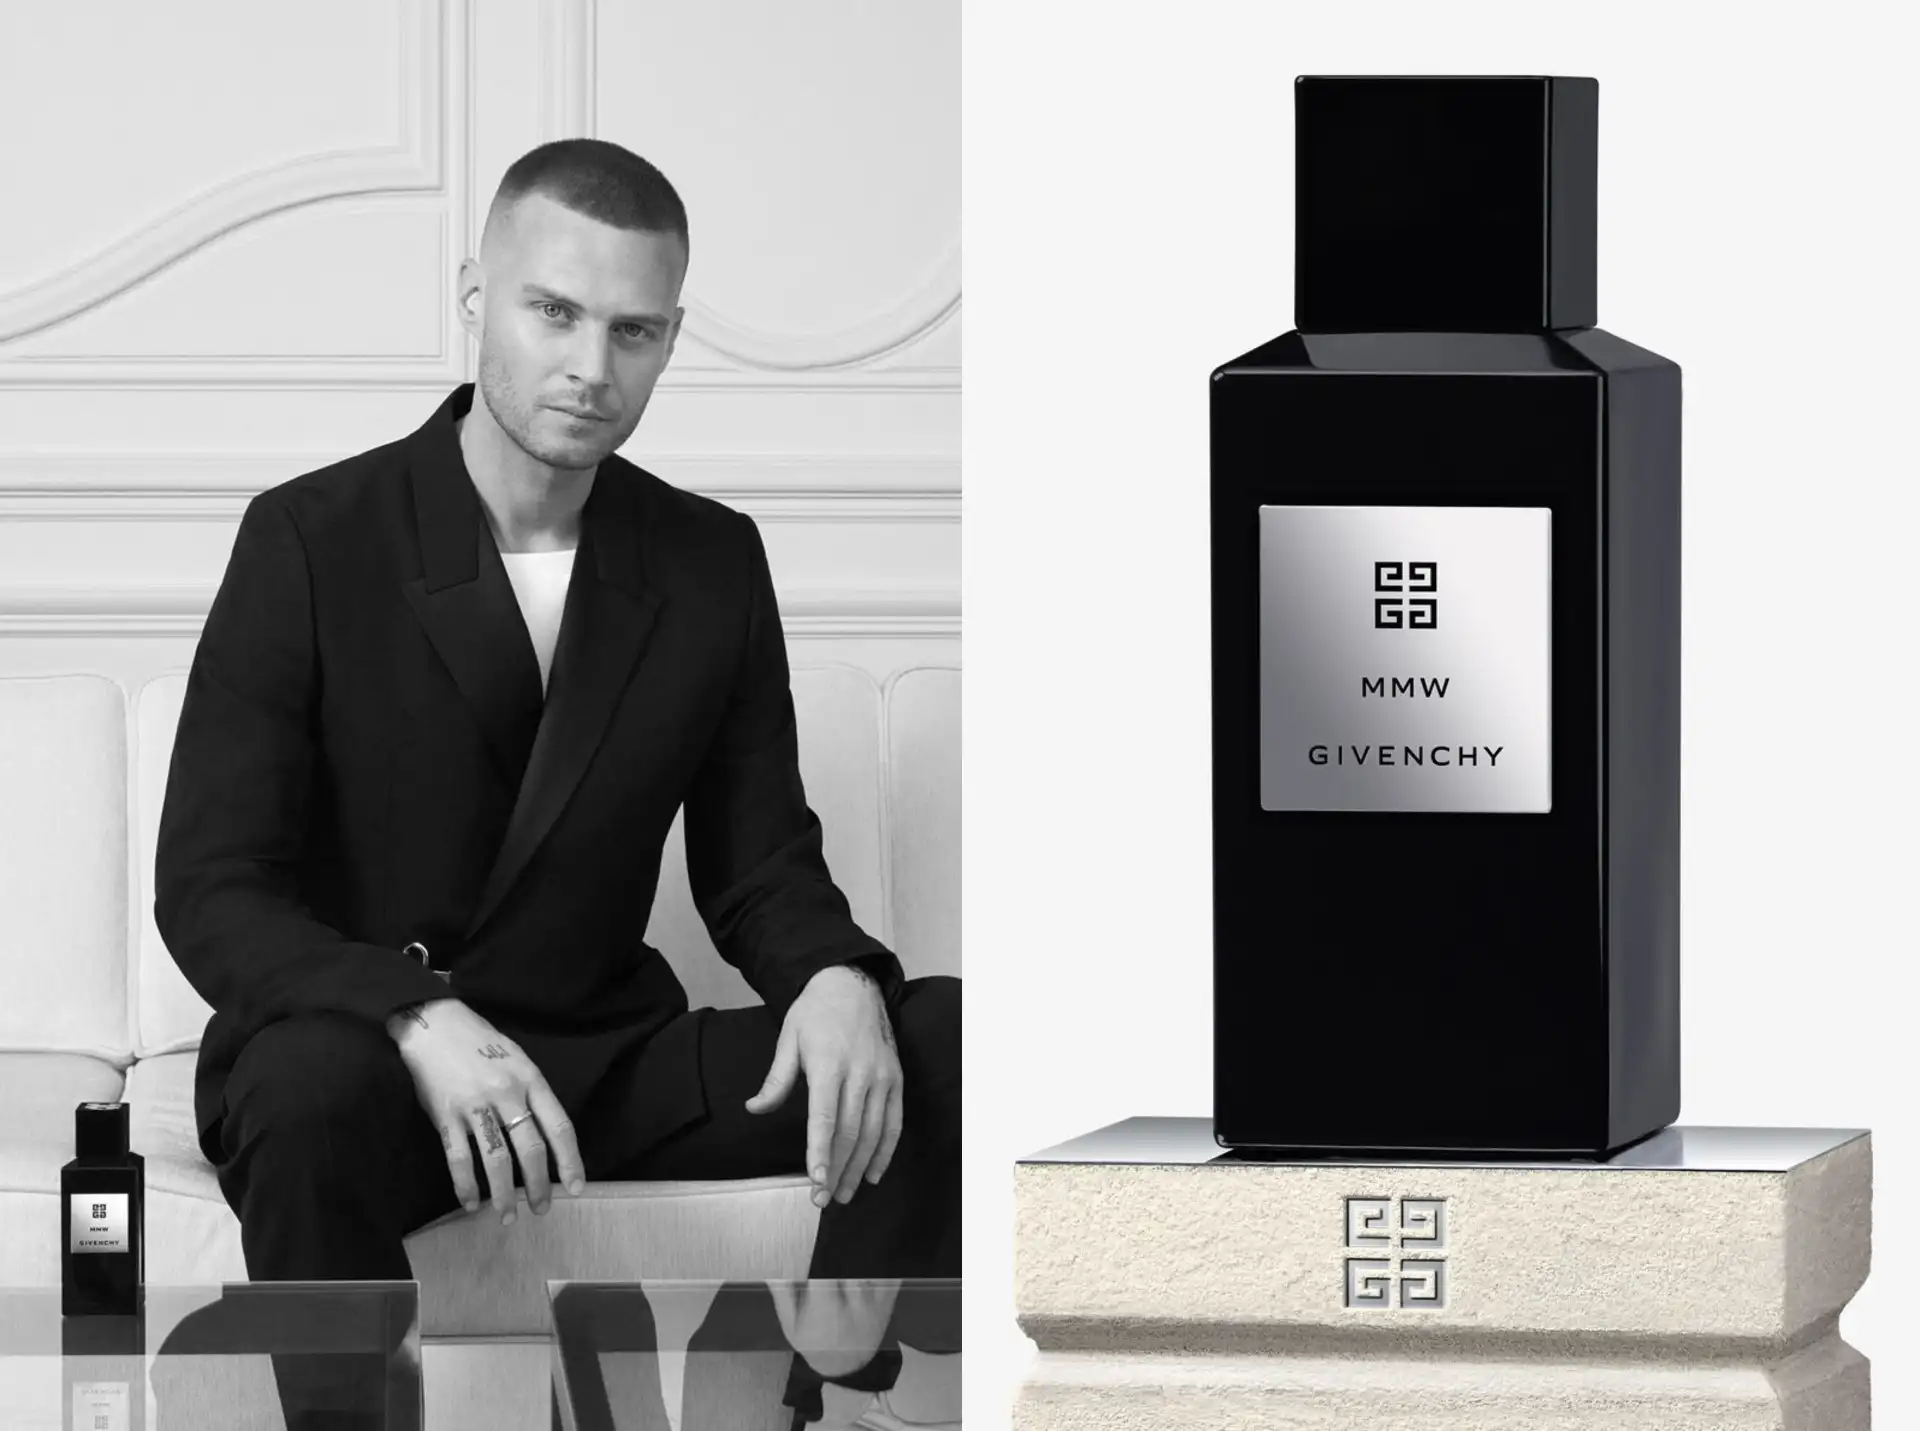 MMW: cómo es es el nuevo perfume de Givenchy